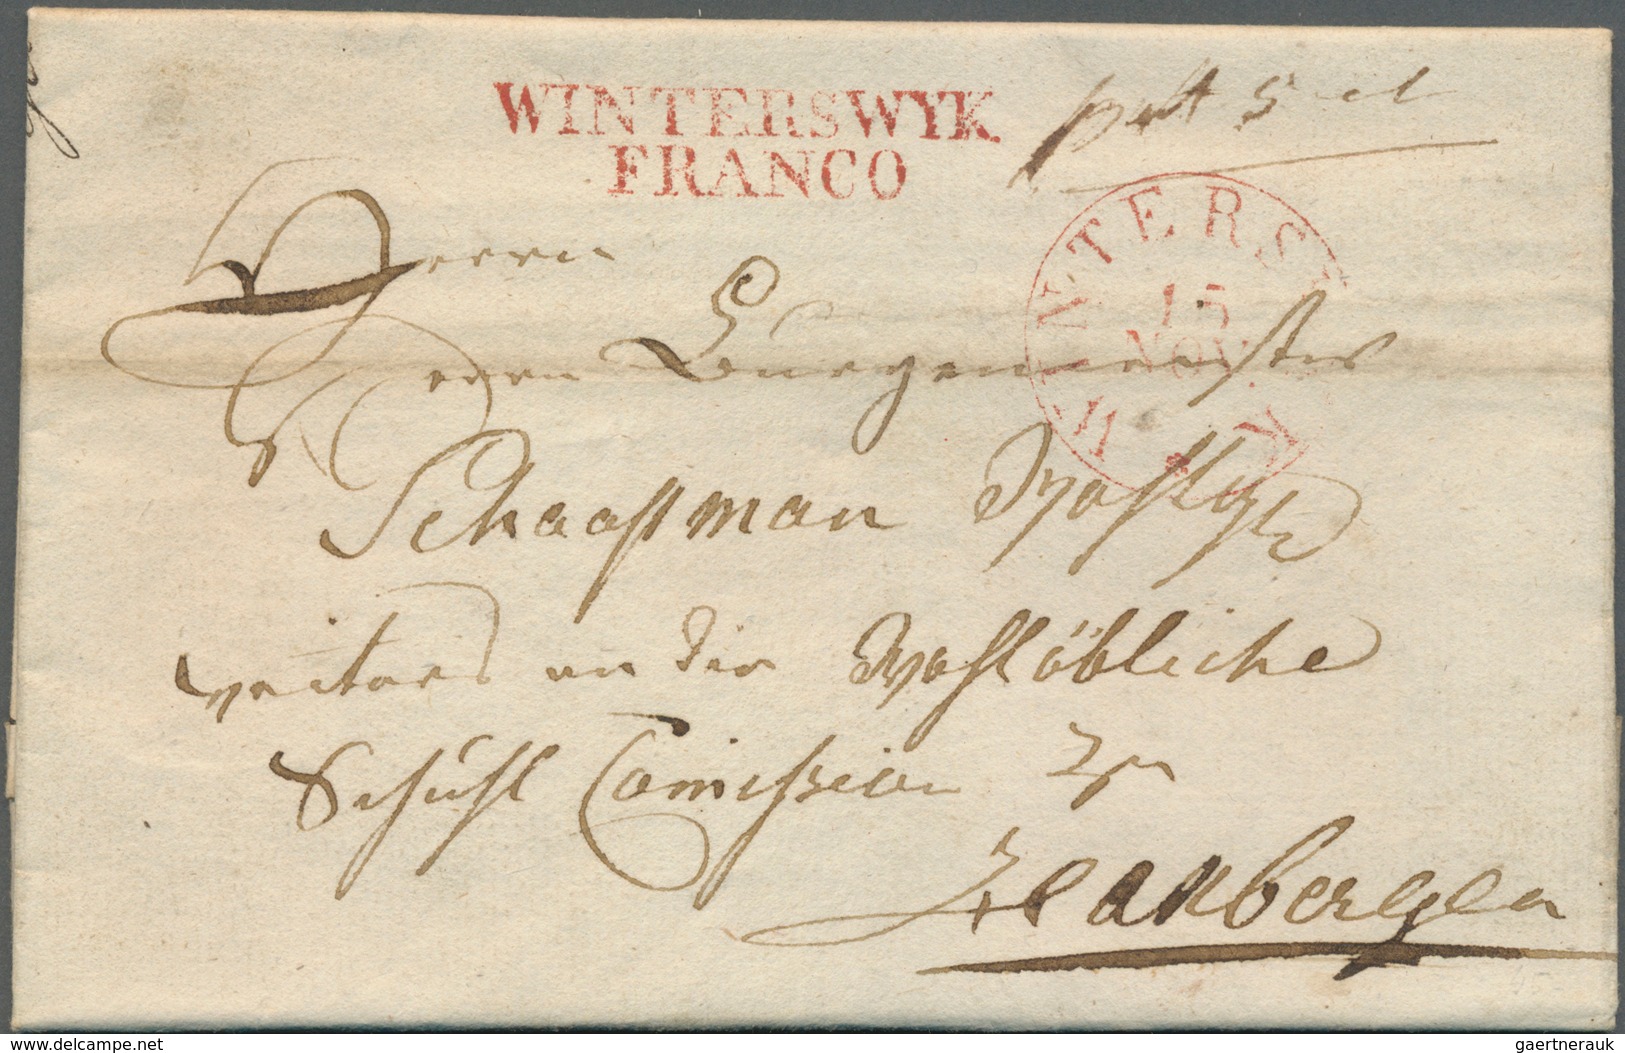 Niederlande - Vorphilatelie: 1800/1850 (ca.), Partie von ca. 110 Briefen mit verschiedensten "FRANCO